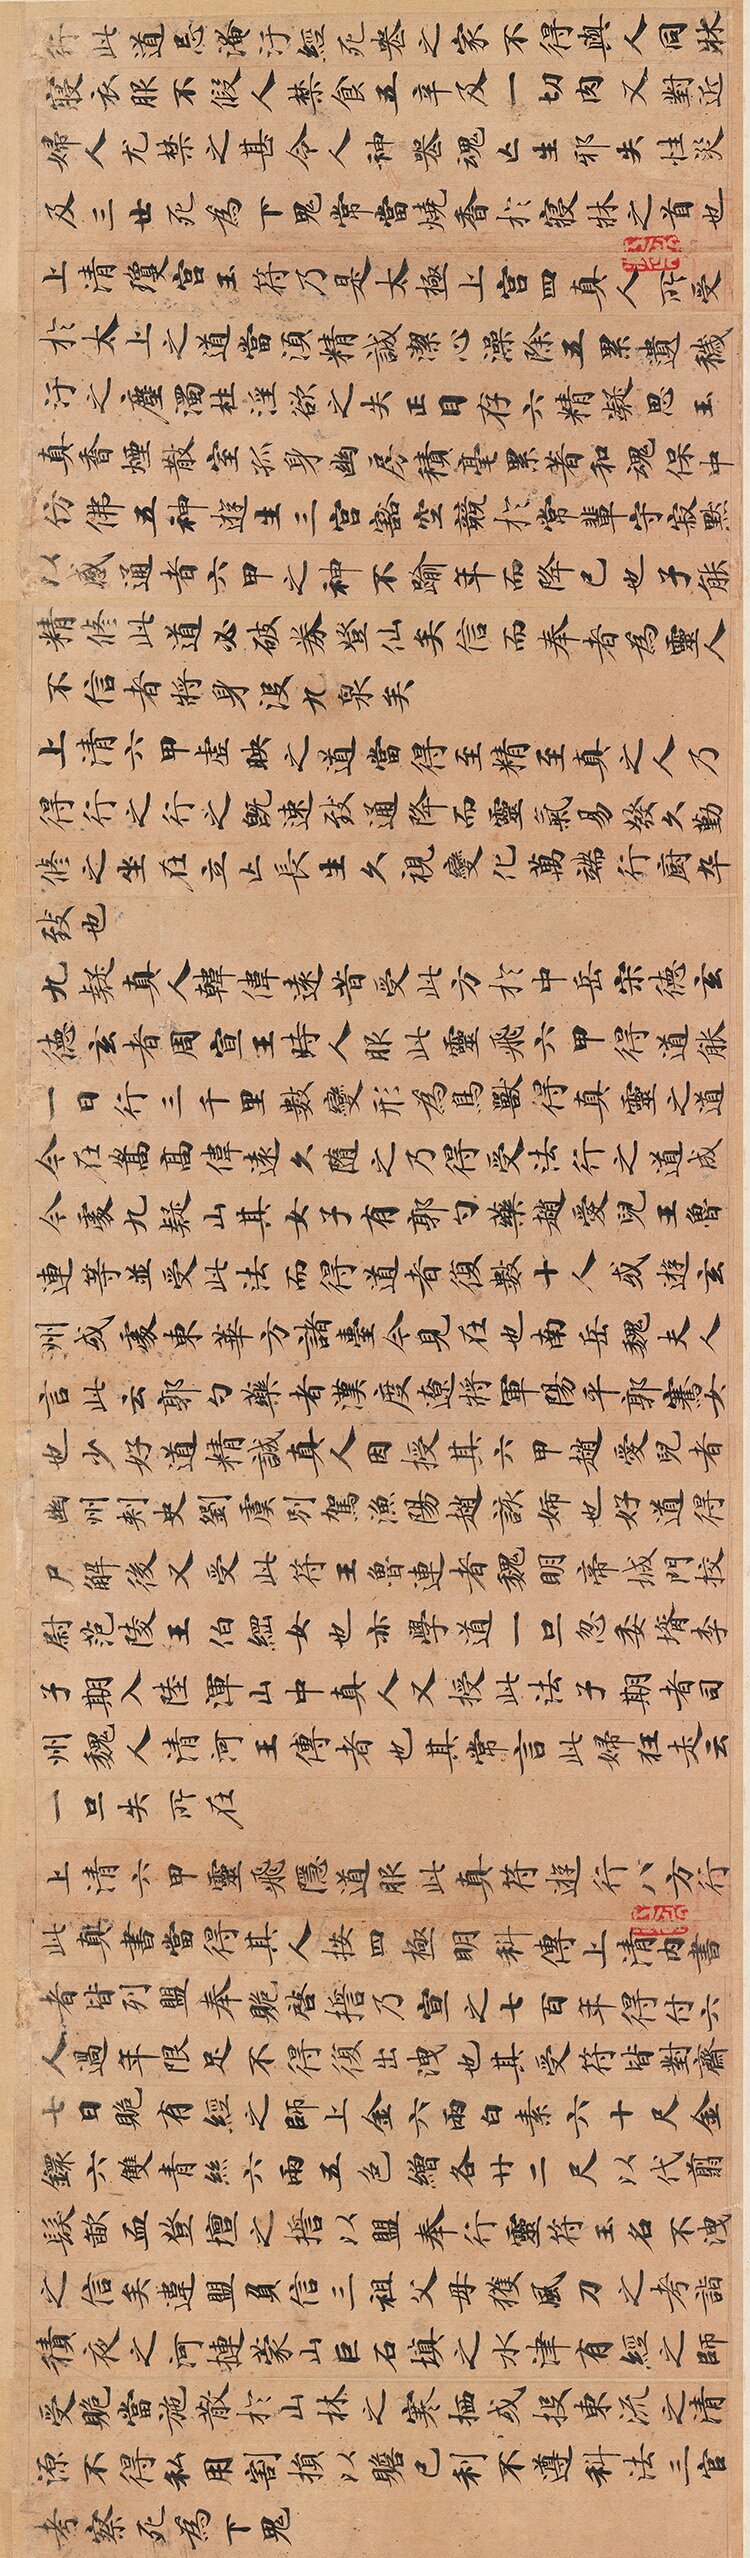 《灵飞经》是一卷道教经卷,传为唐代钟绍京所书,长卷字体秀美,工整